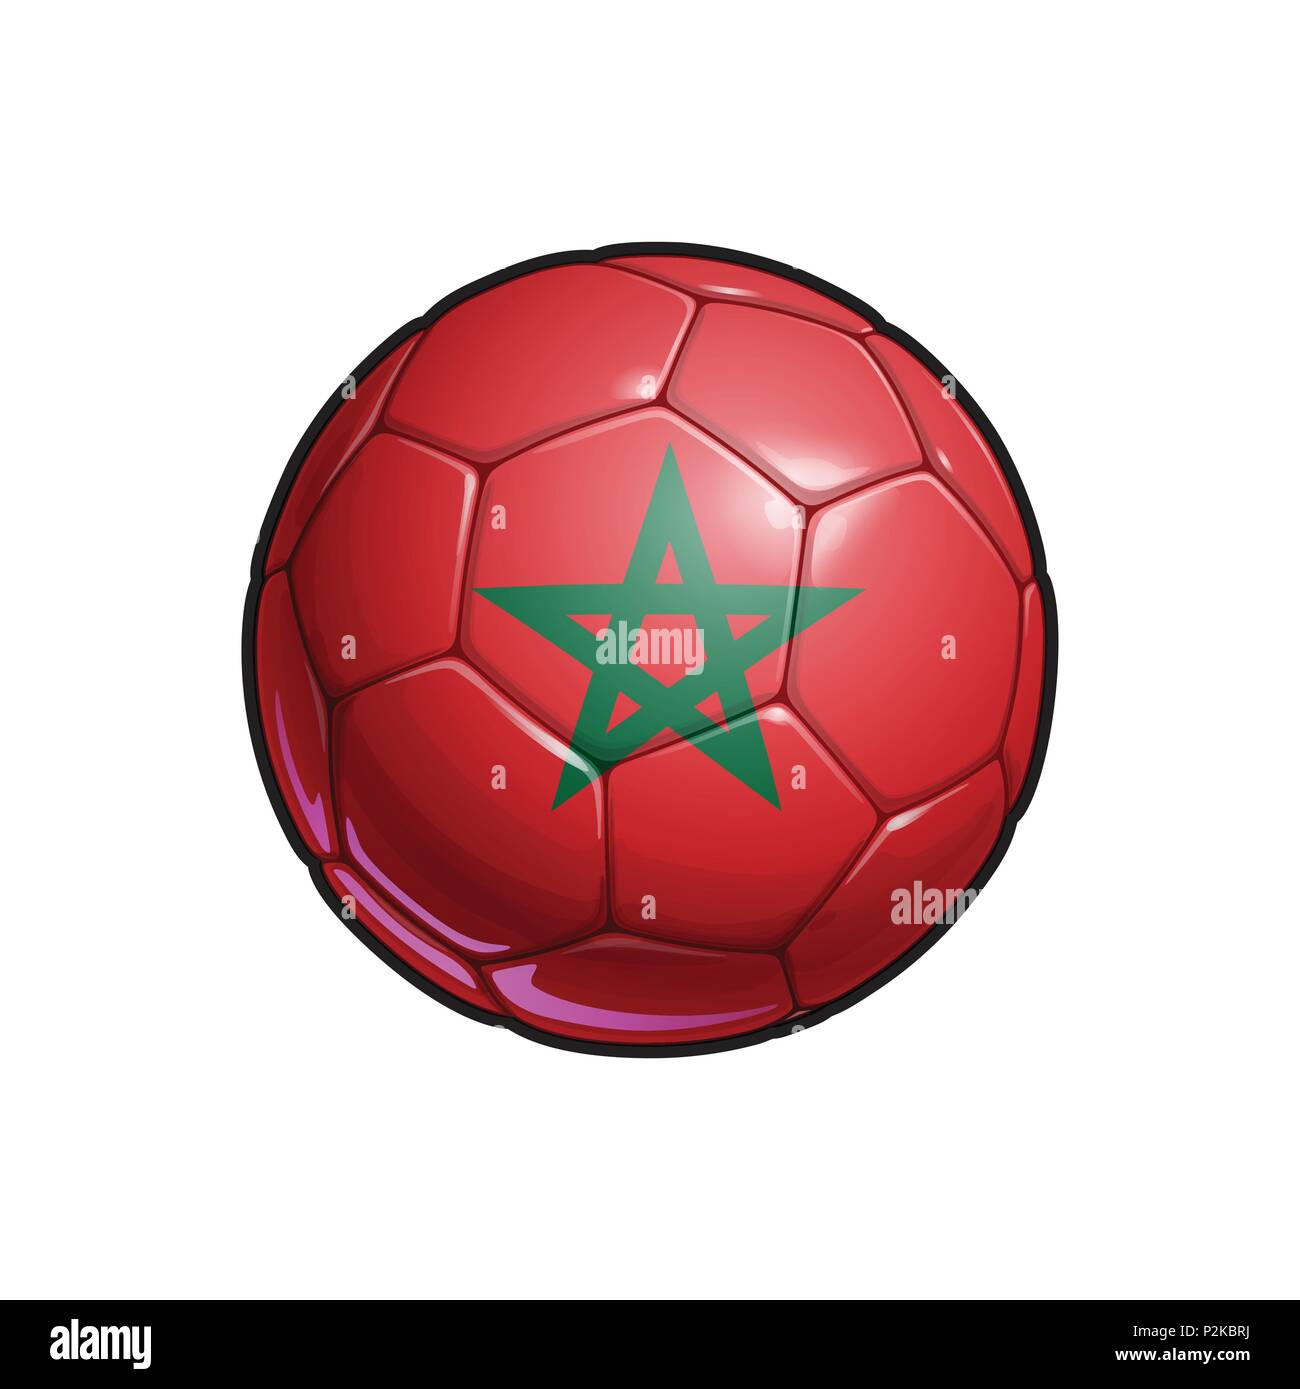 Illustrazione vettoriale di un pallone da calcio - pallone da calcio con la bandiera marocchina di colori. Tutti gli elementi ordinatamente su ben definiti strati Illustrazione Vettoriale